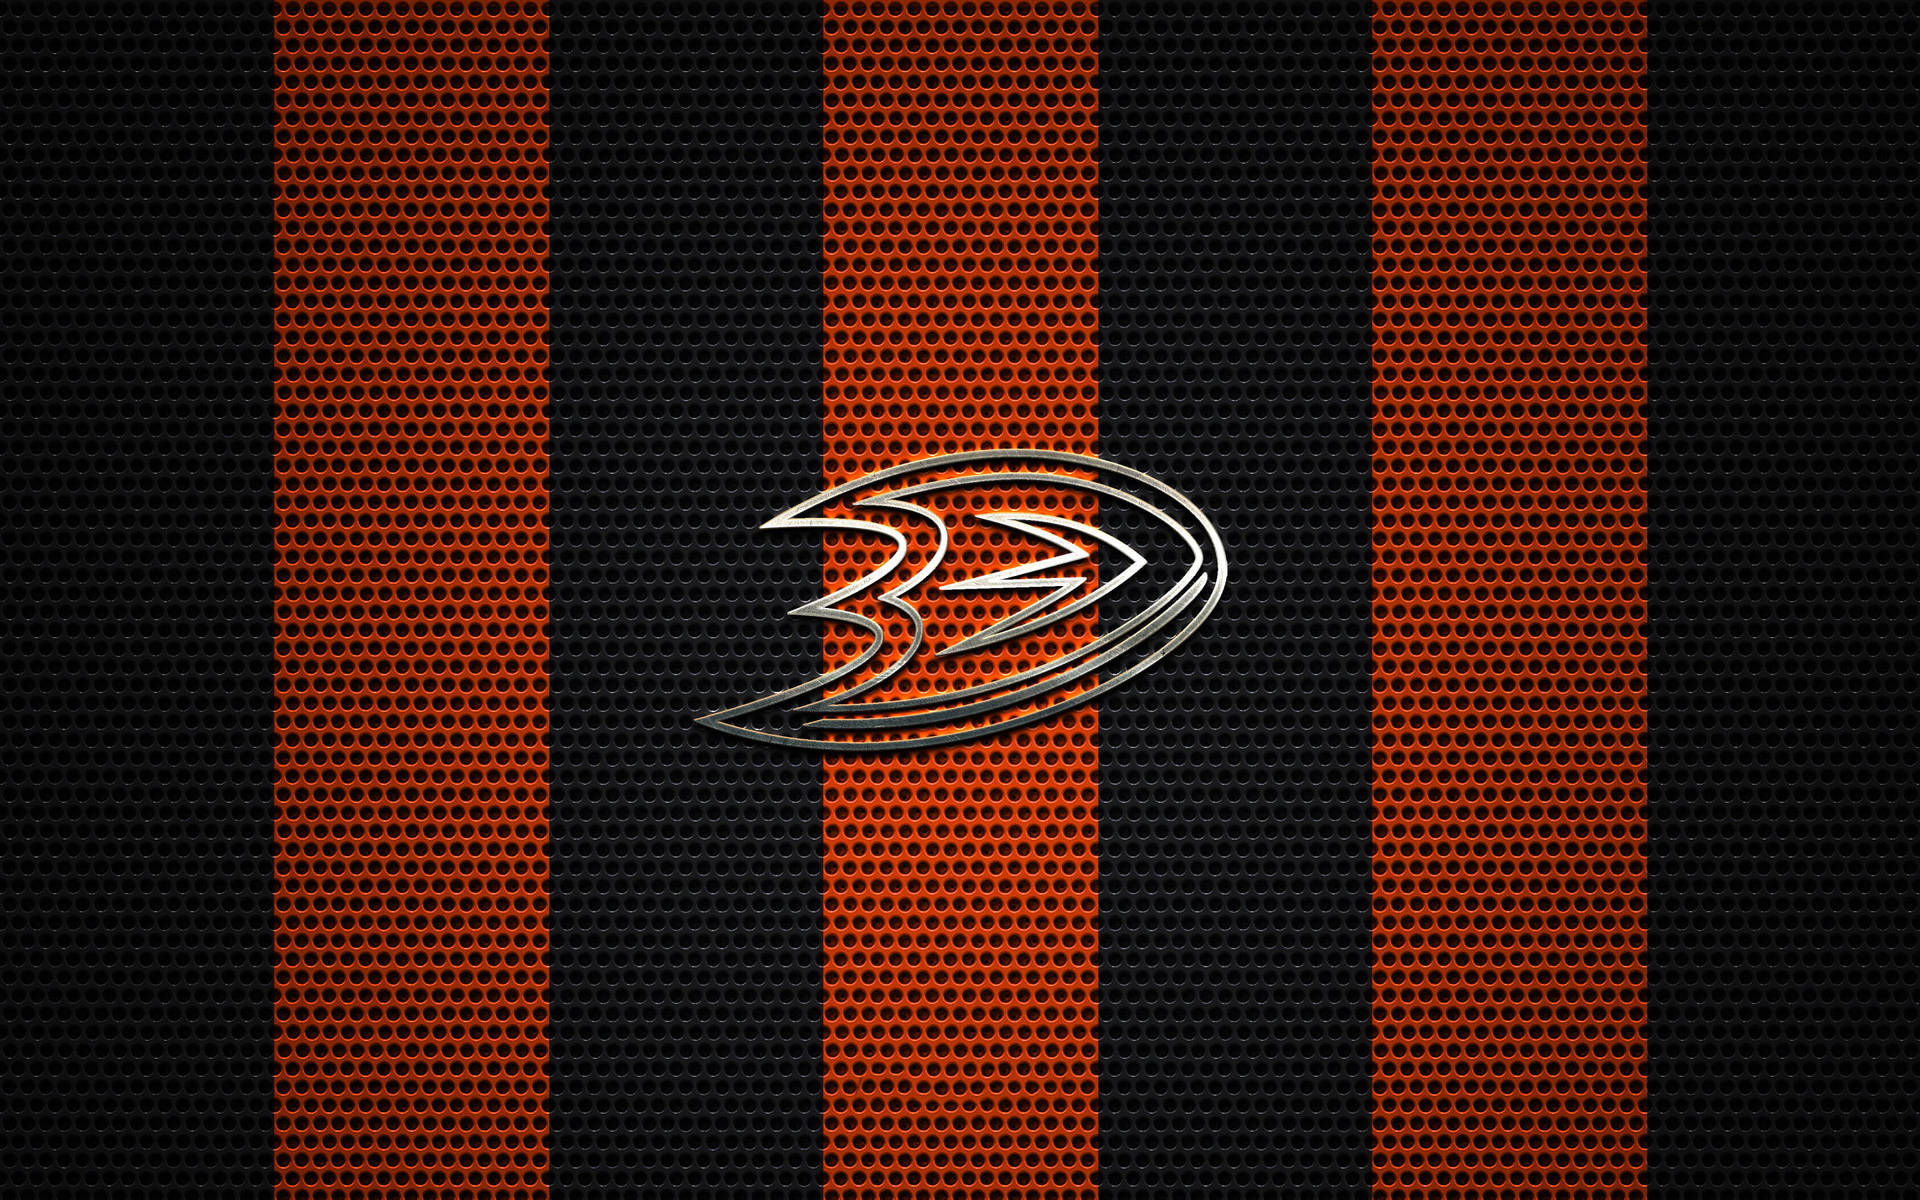 Anaheim Ducks Logo On Mesh Background Background